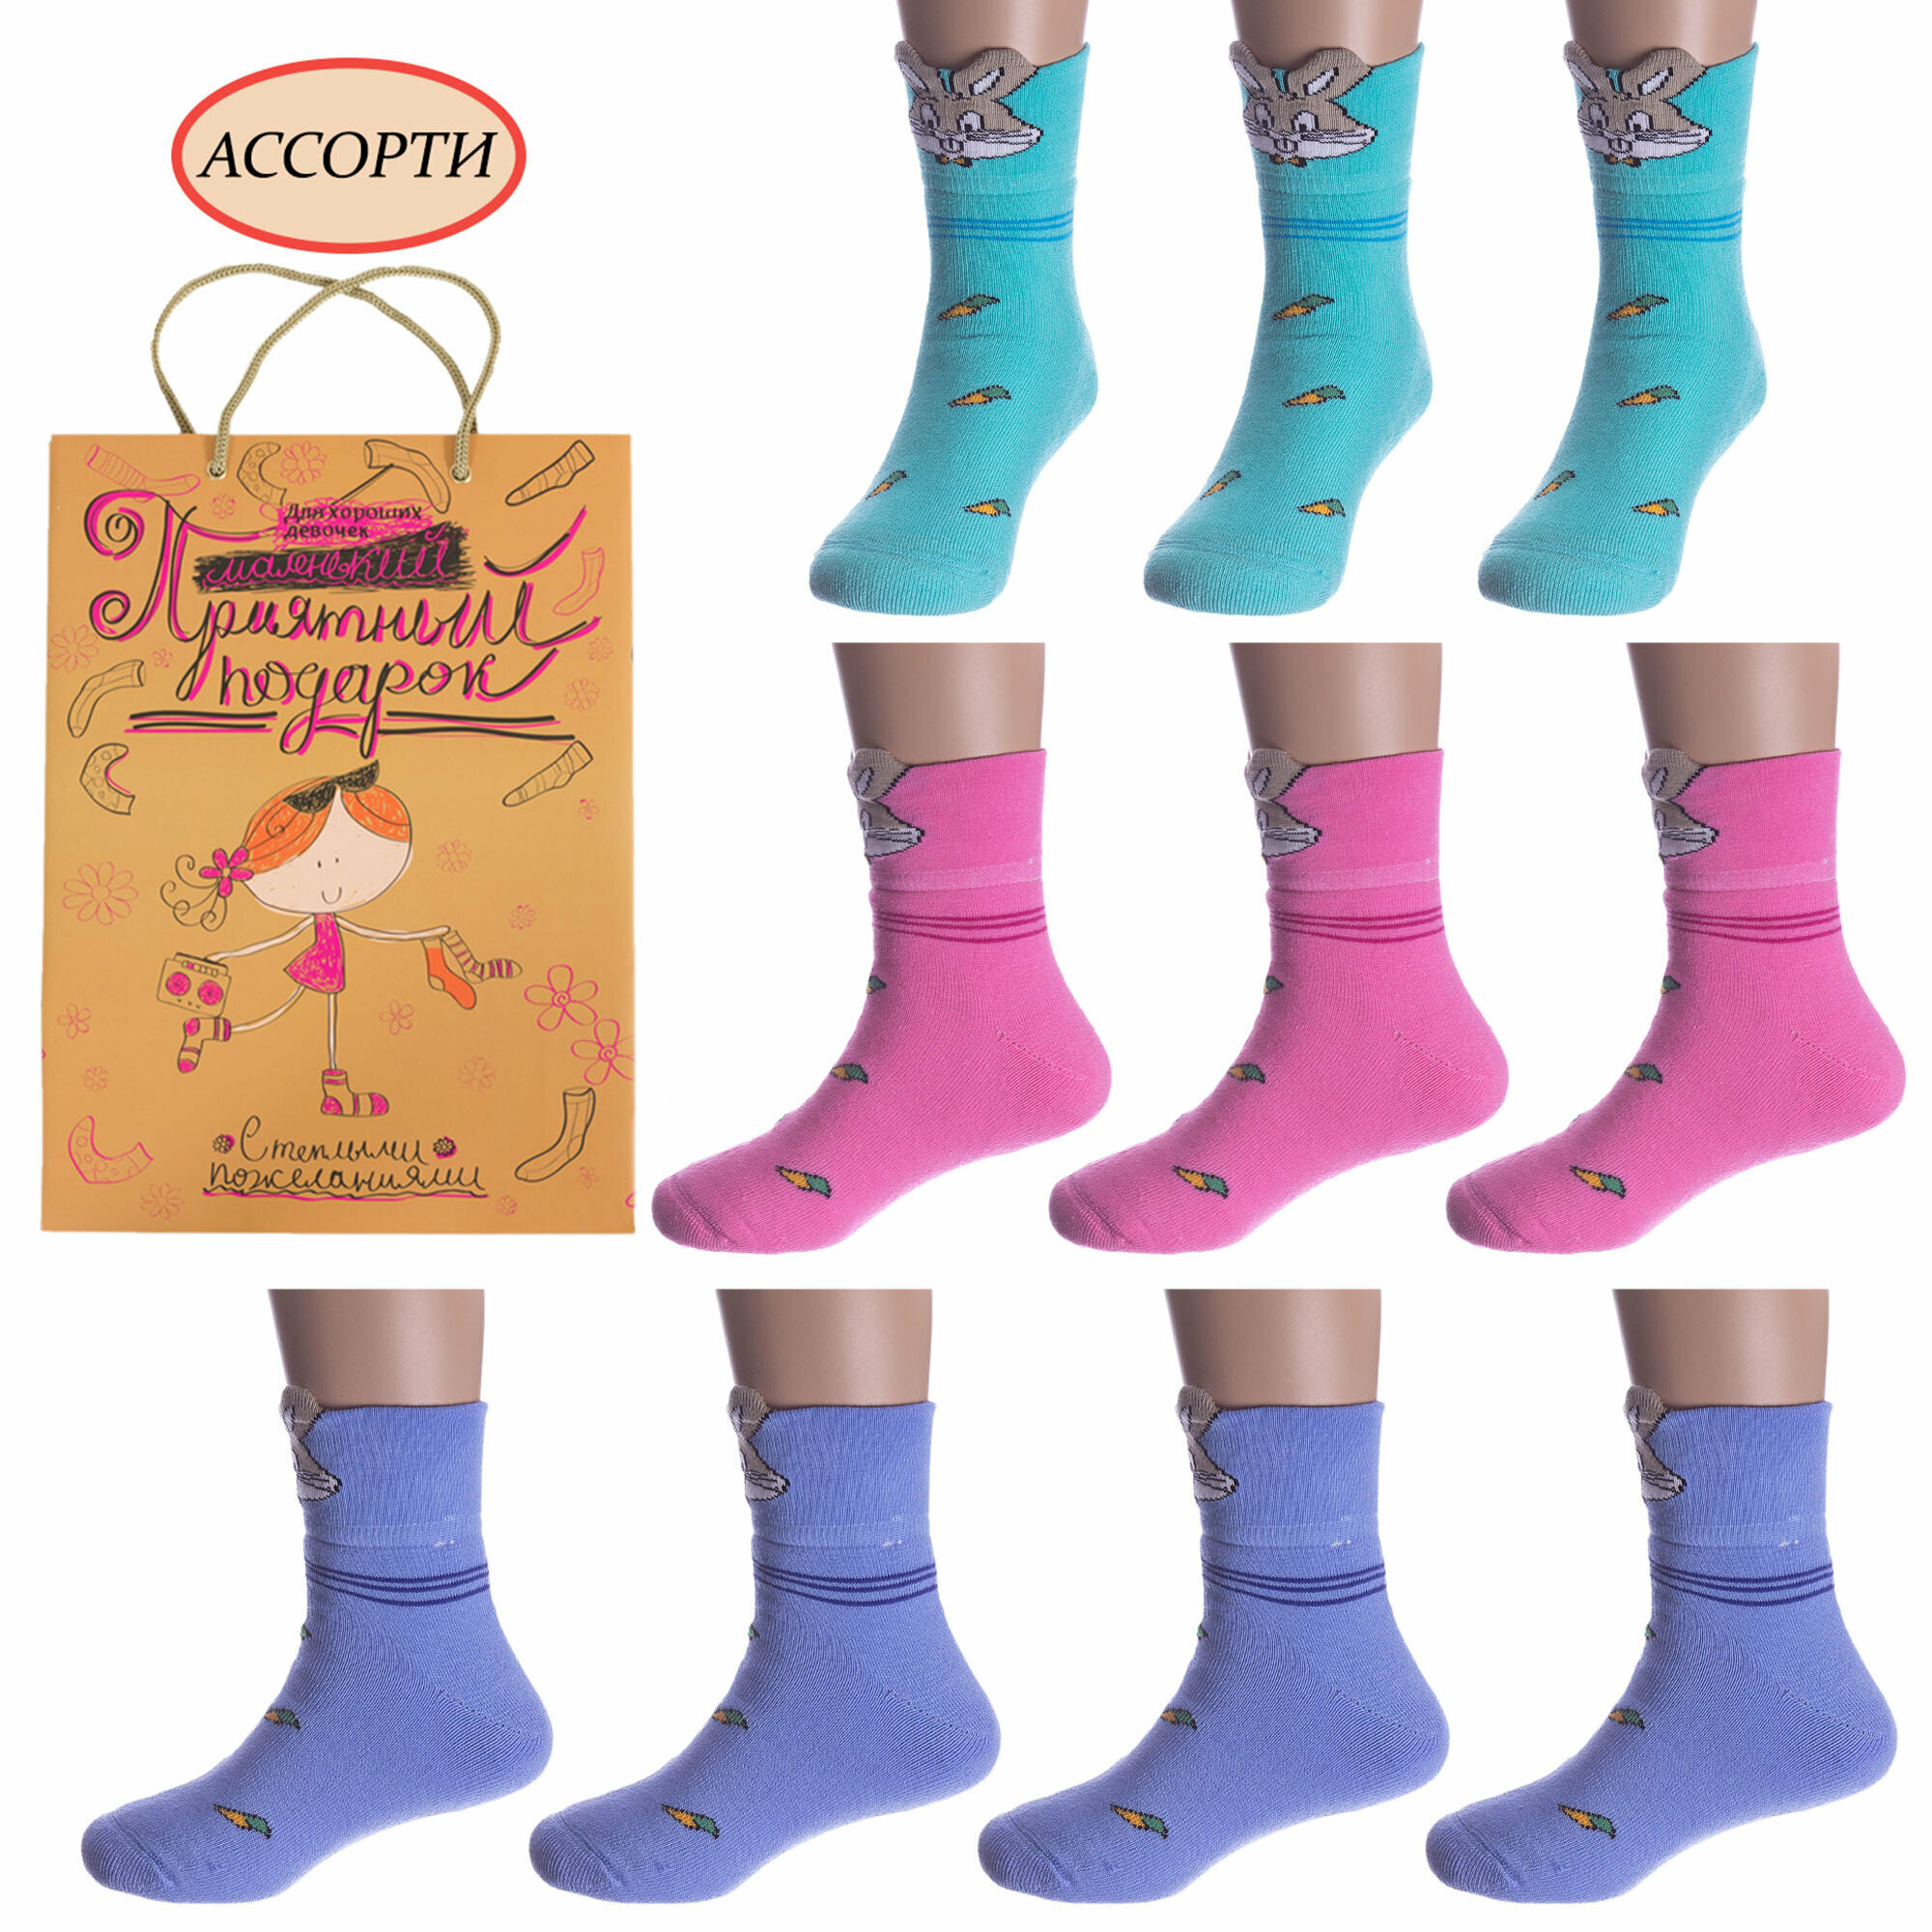 Набор для девочек из 10 пар махровых носков LORENZline Л3-10 размер 14-16